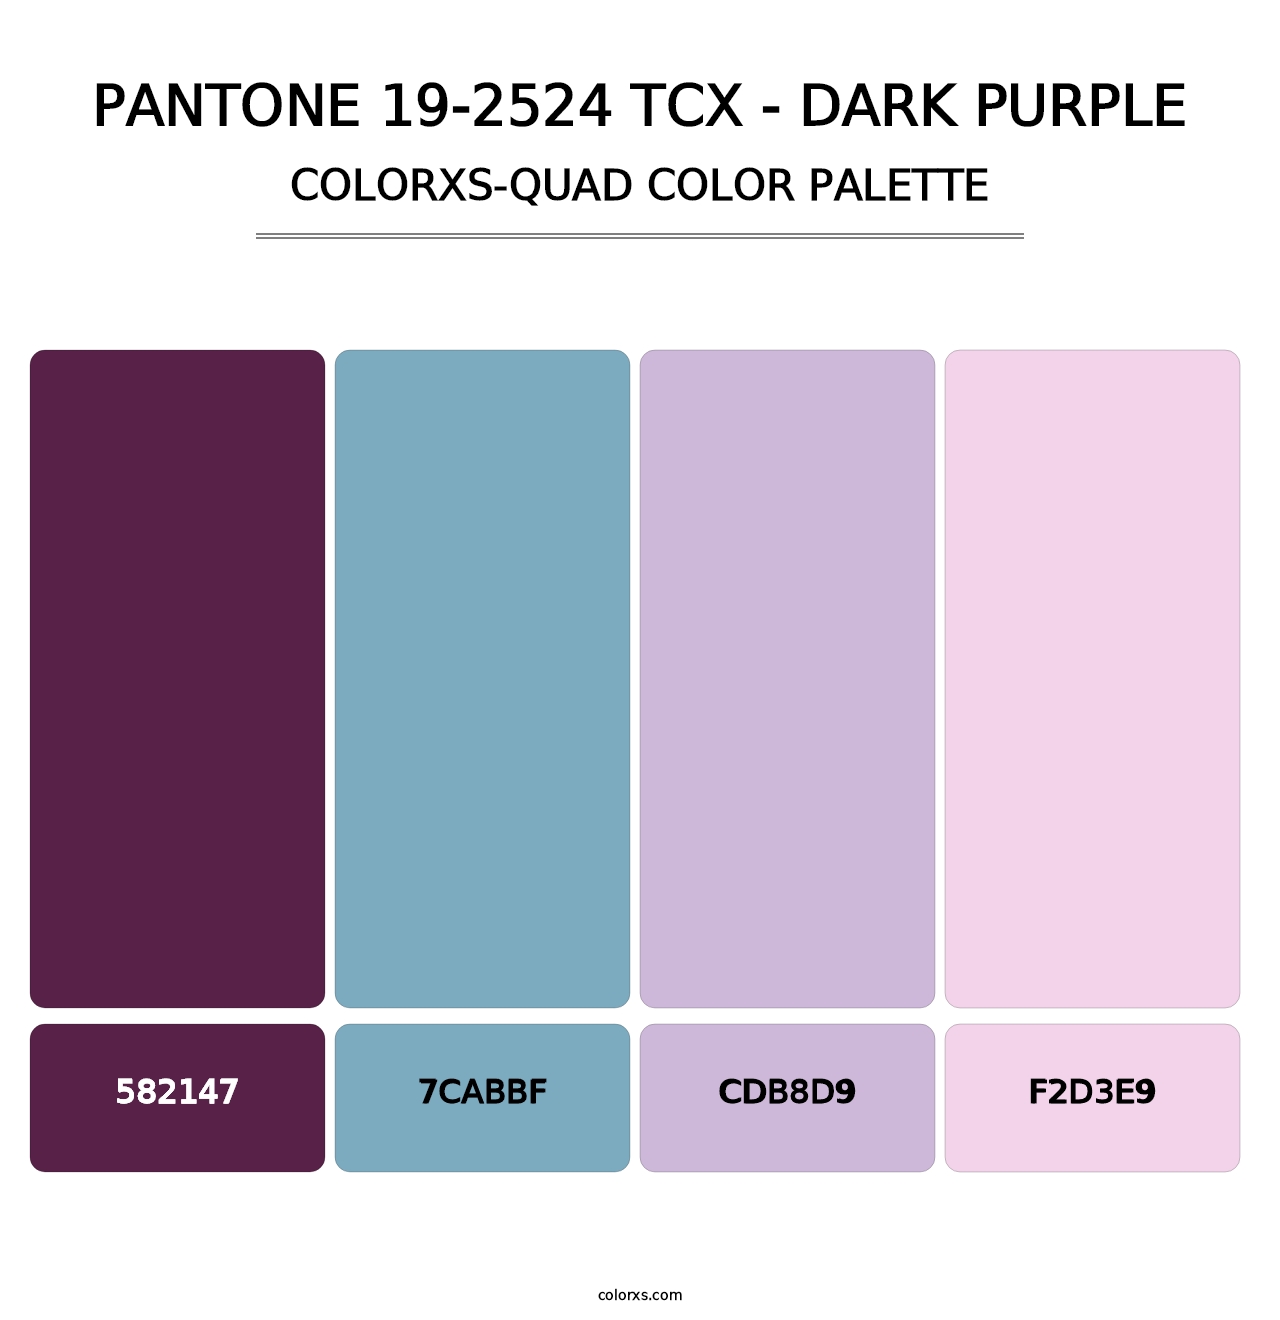 PANTONE 19-2524 TCX - Dark Purple - Colorxs Quad Palette